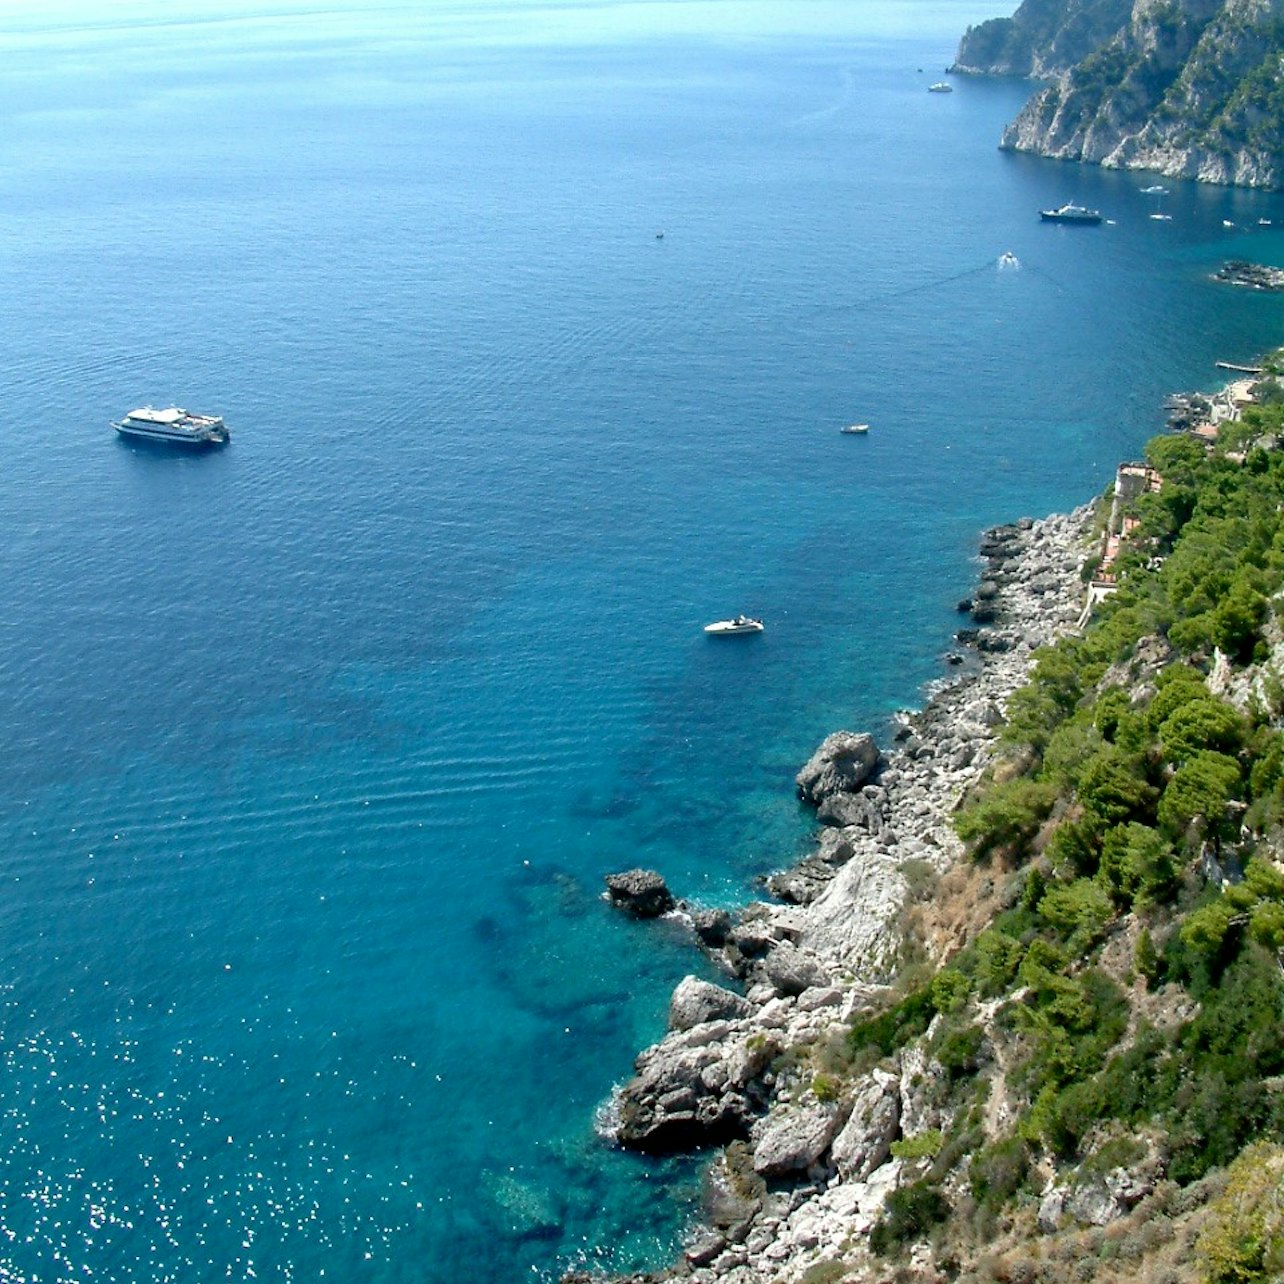 Capri Coast to Coast Boat Excursion - Accommodations in Capri